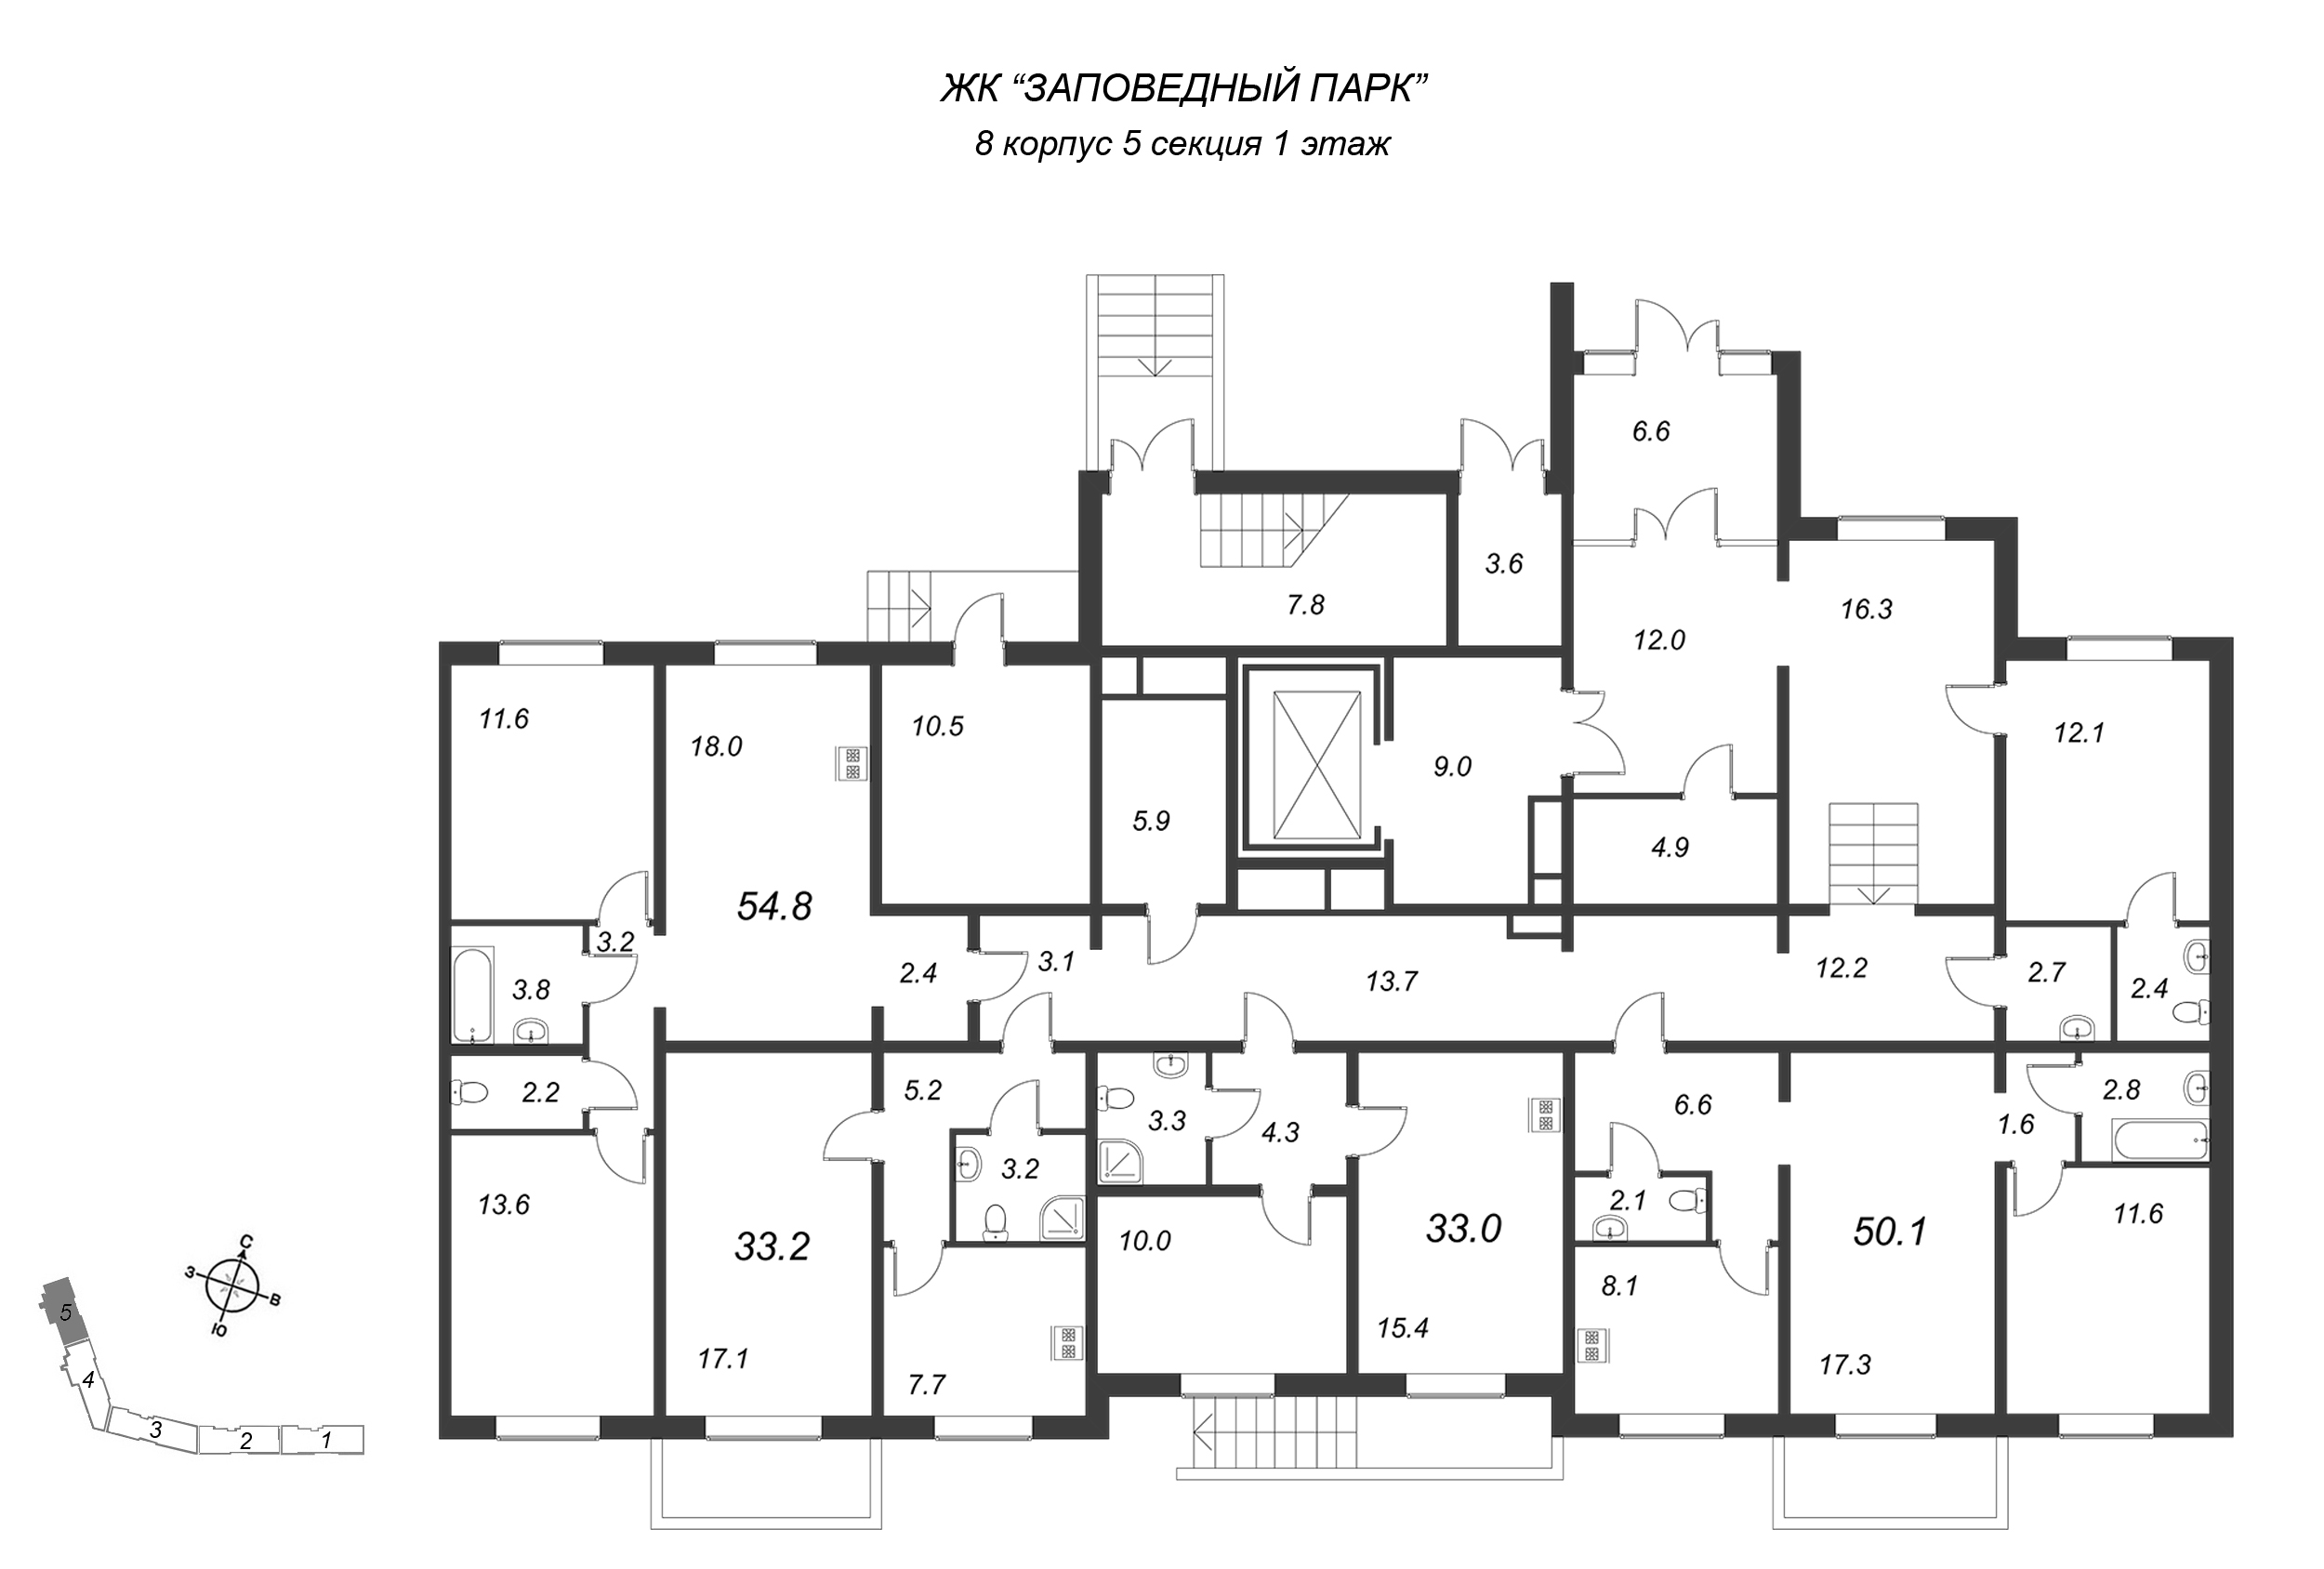 2-комнатная квартира, 49.4 м² в ЖК "Заповедный парк" - планировка этажа